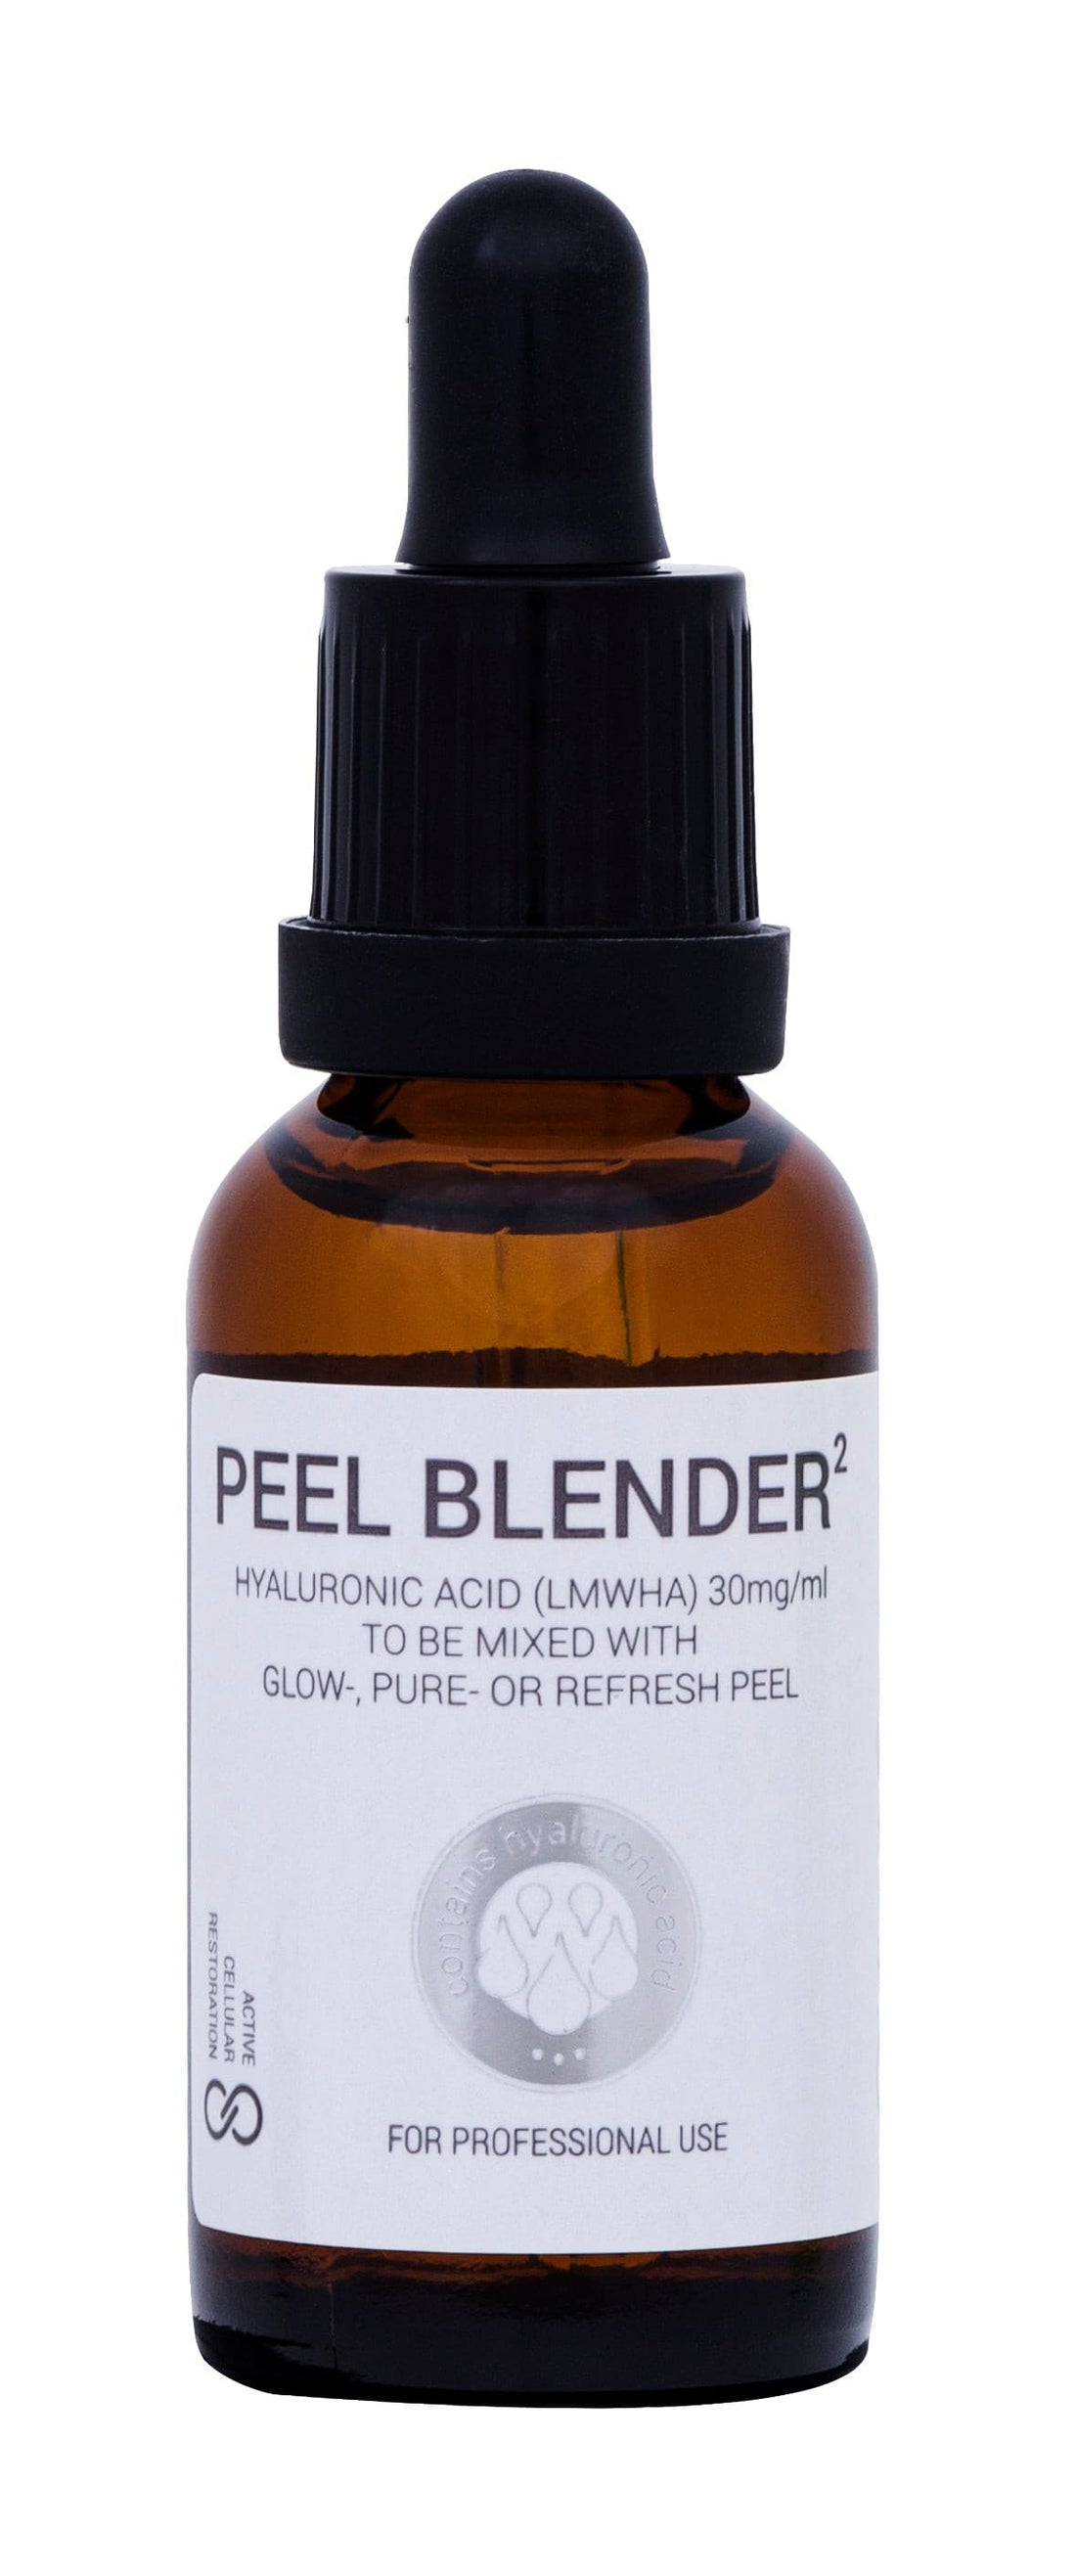 PEEL BLENDER bottle